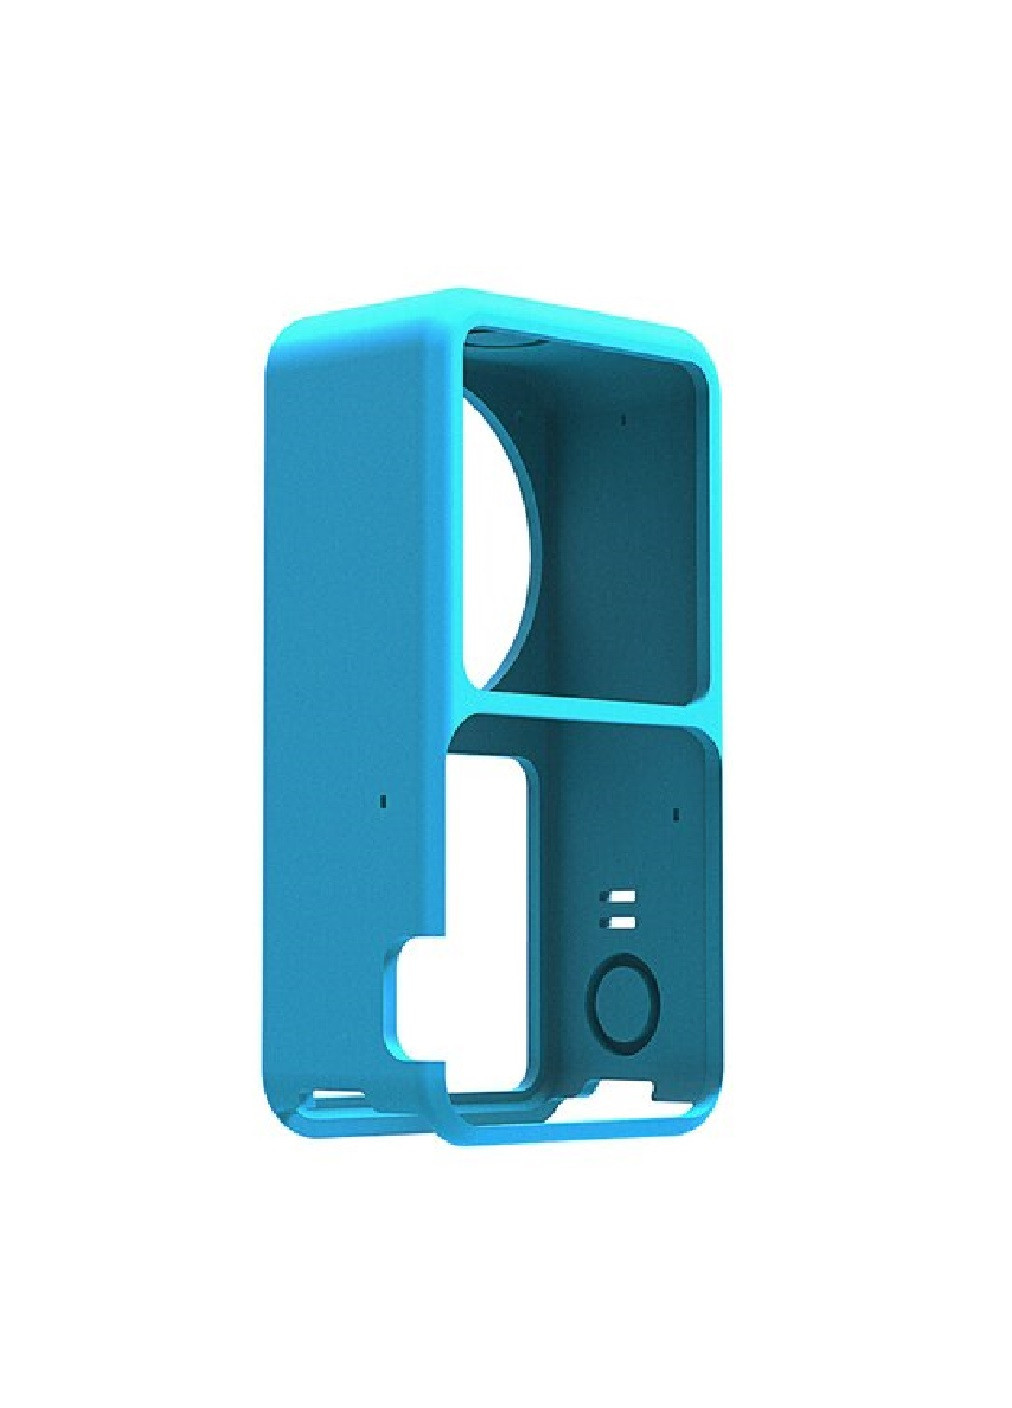 Захисний силіконовий чохол захист від пилу забруднення подряпин ударів для екшн камери для DJI Action 2 (474925-Prob) Синій Unbranded (260377381)